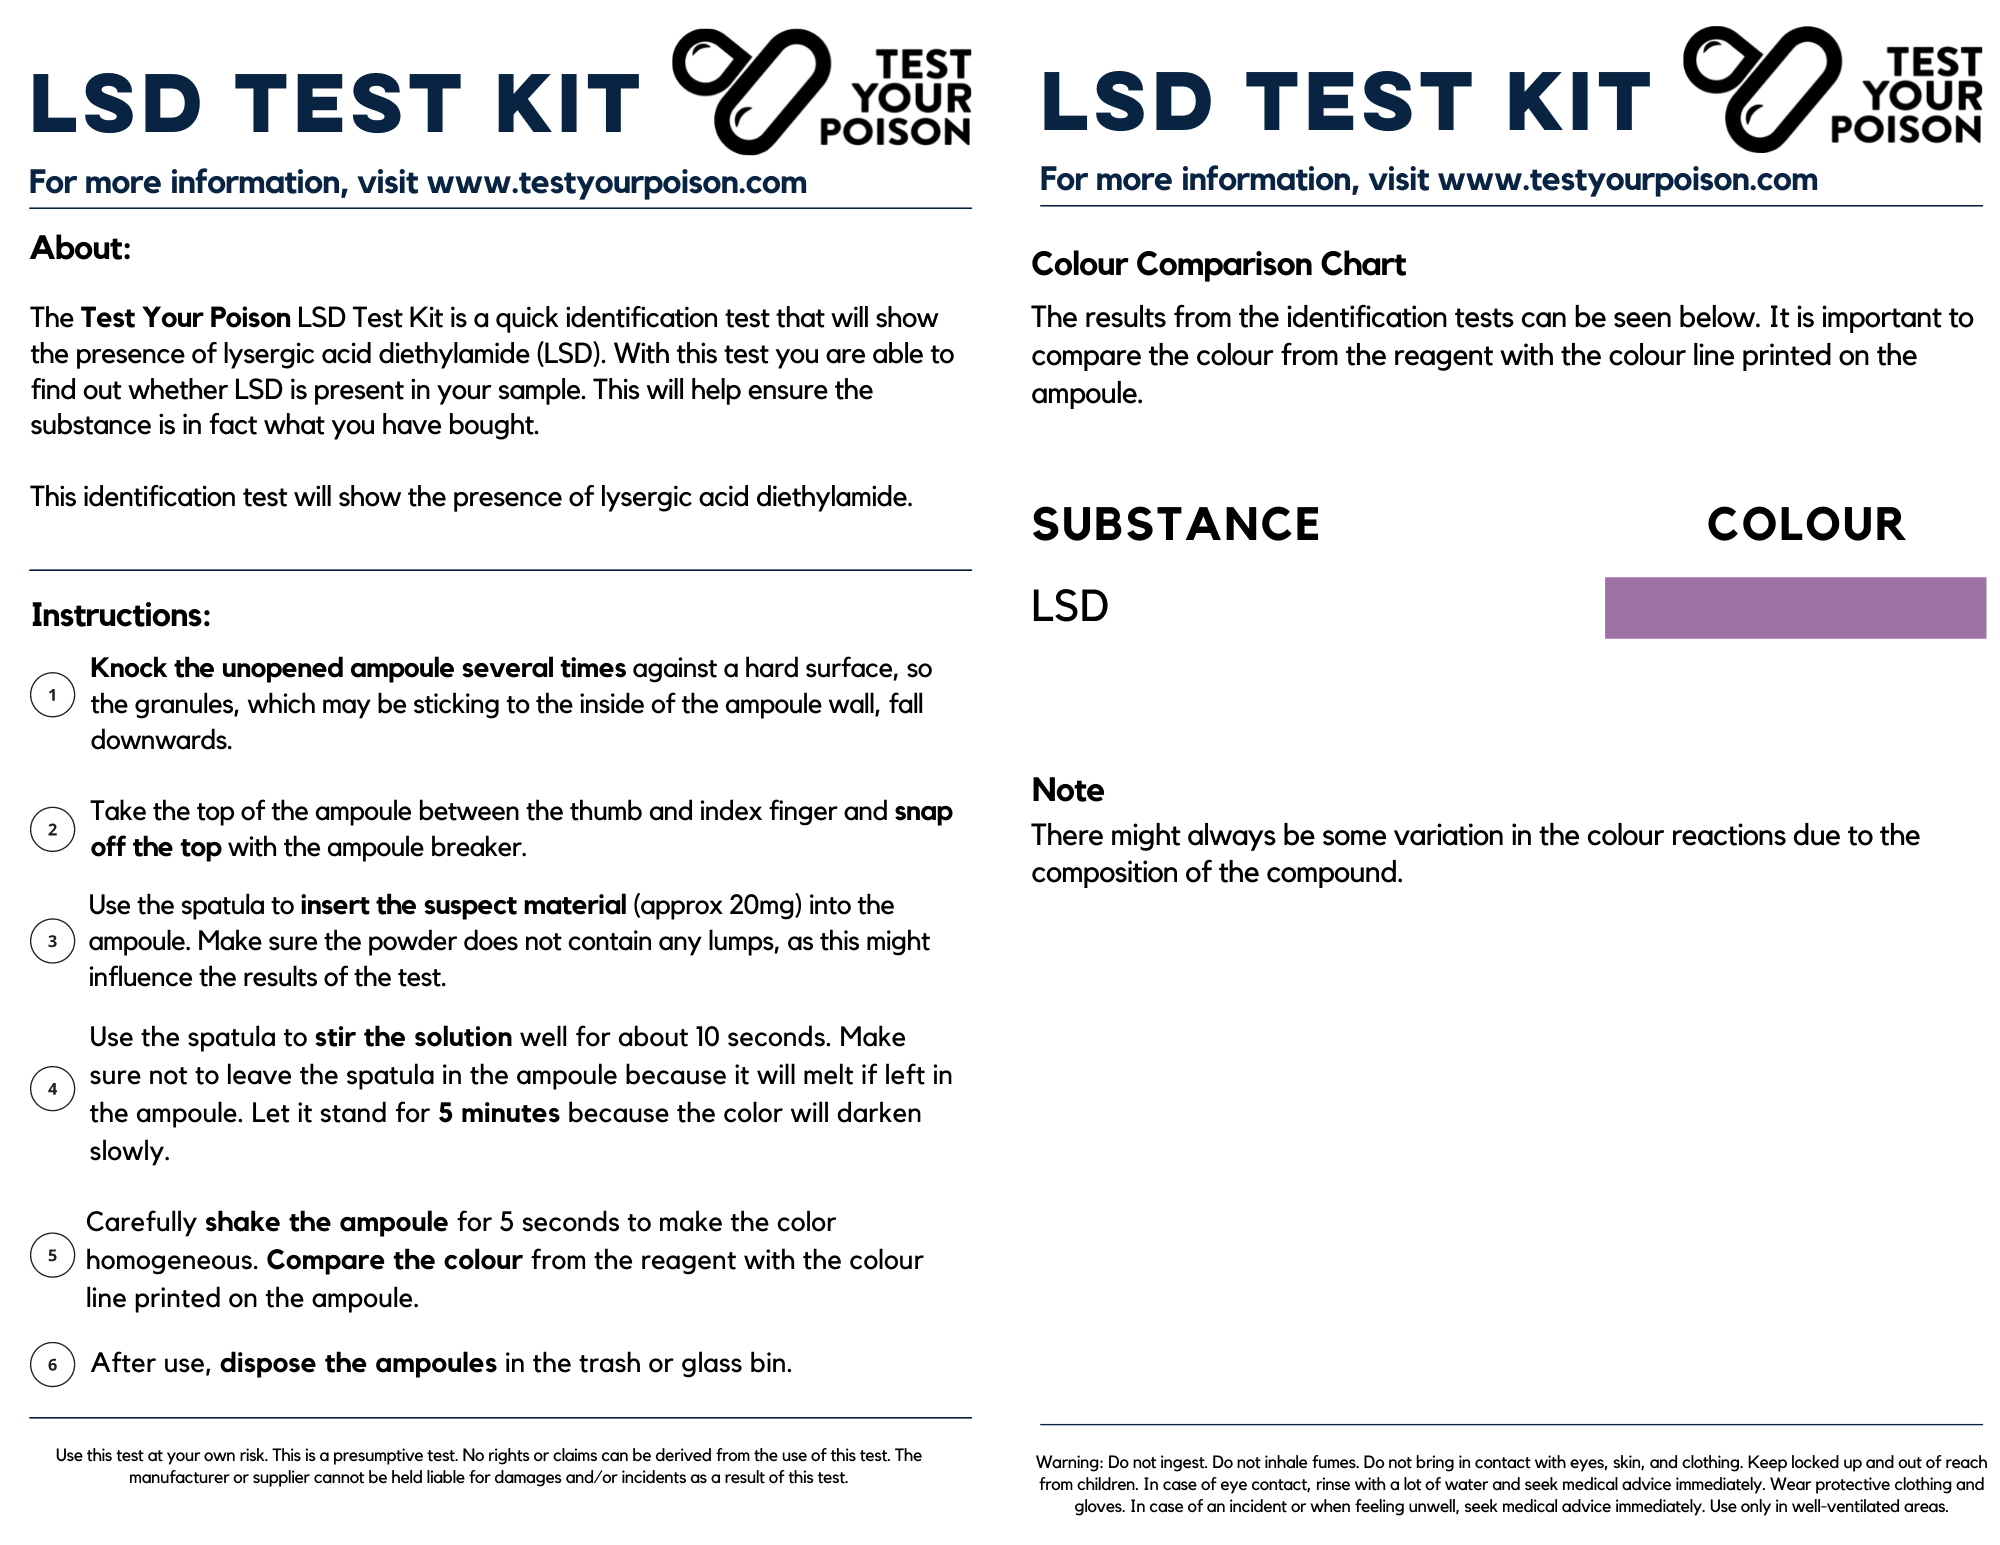 LSD Test Kit Instructions